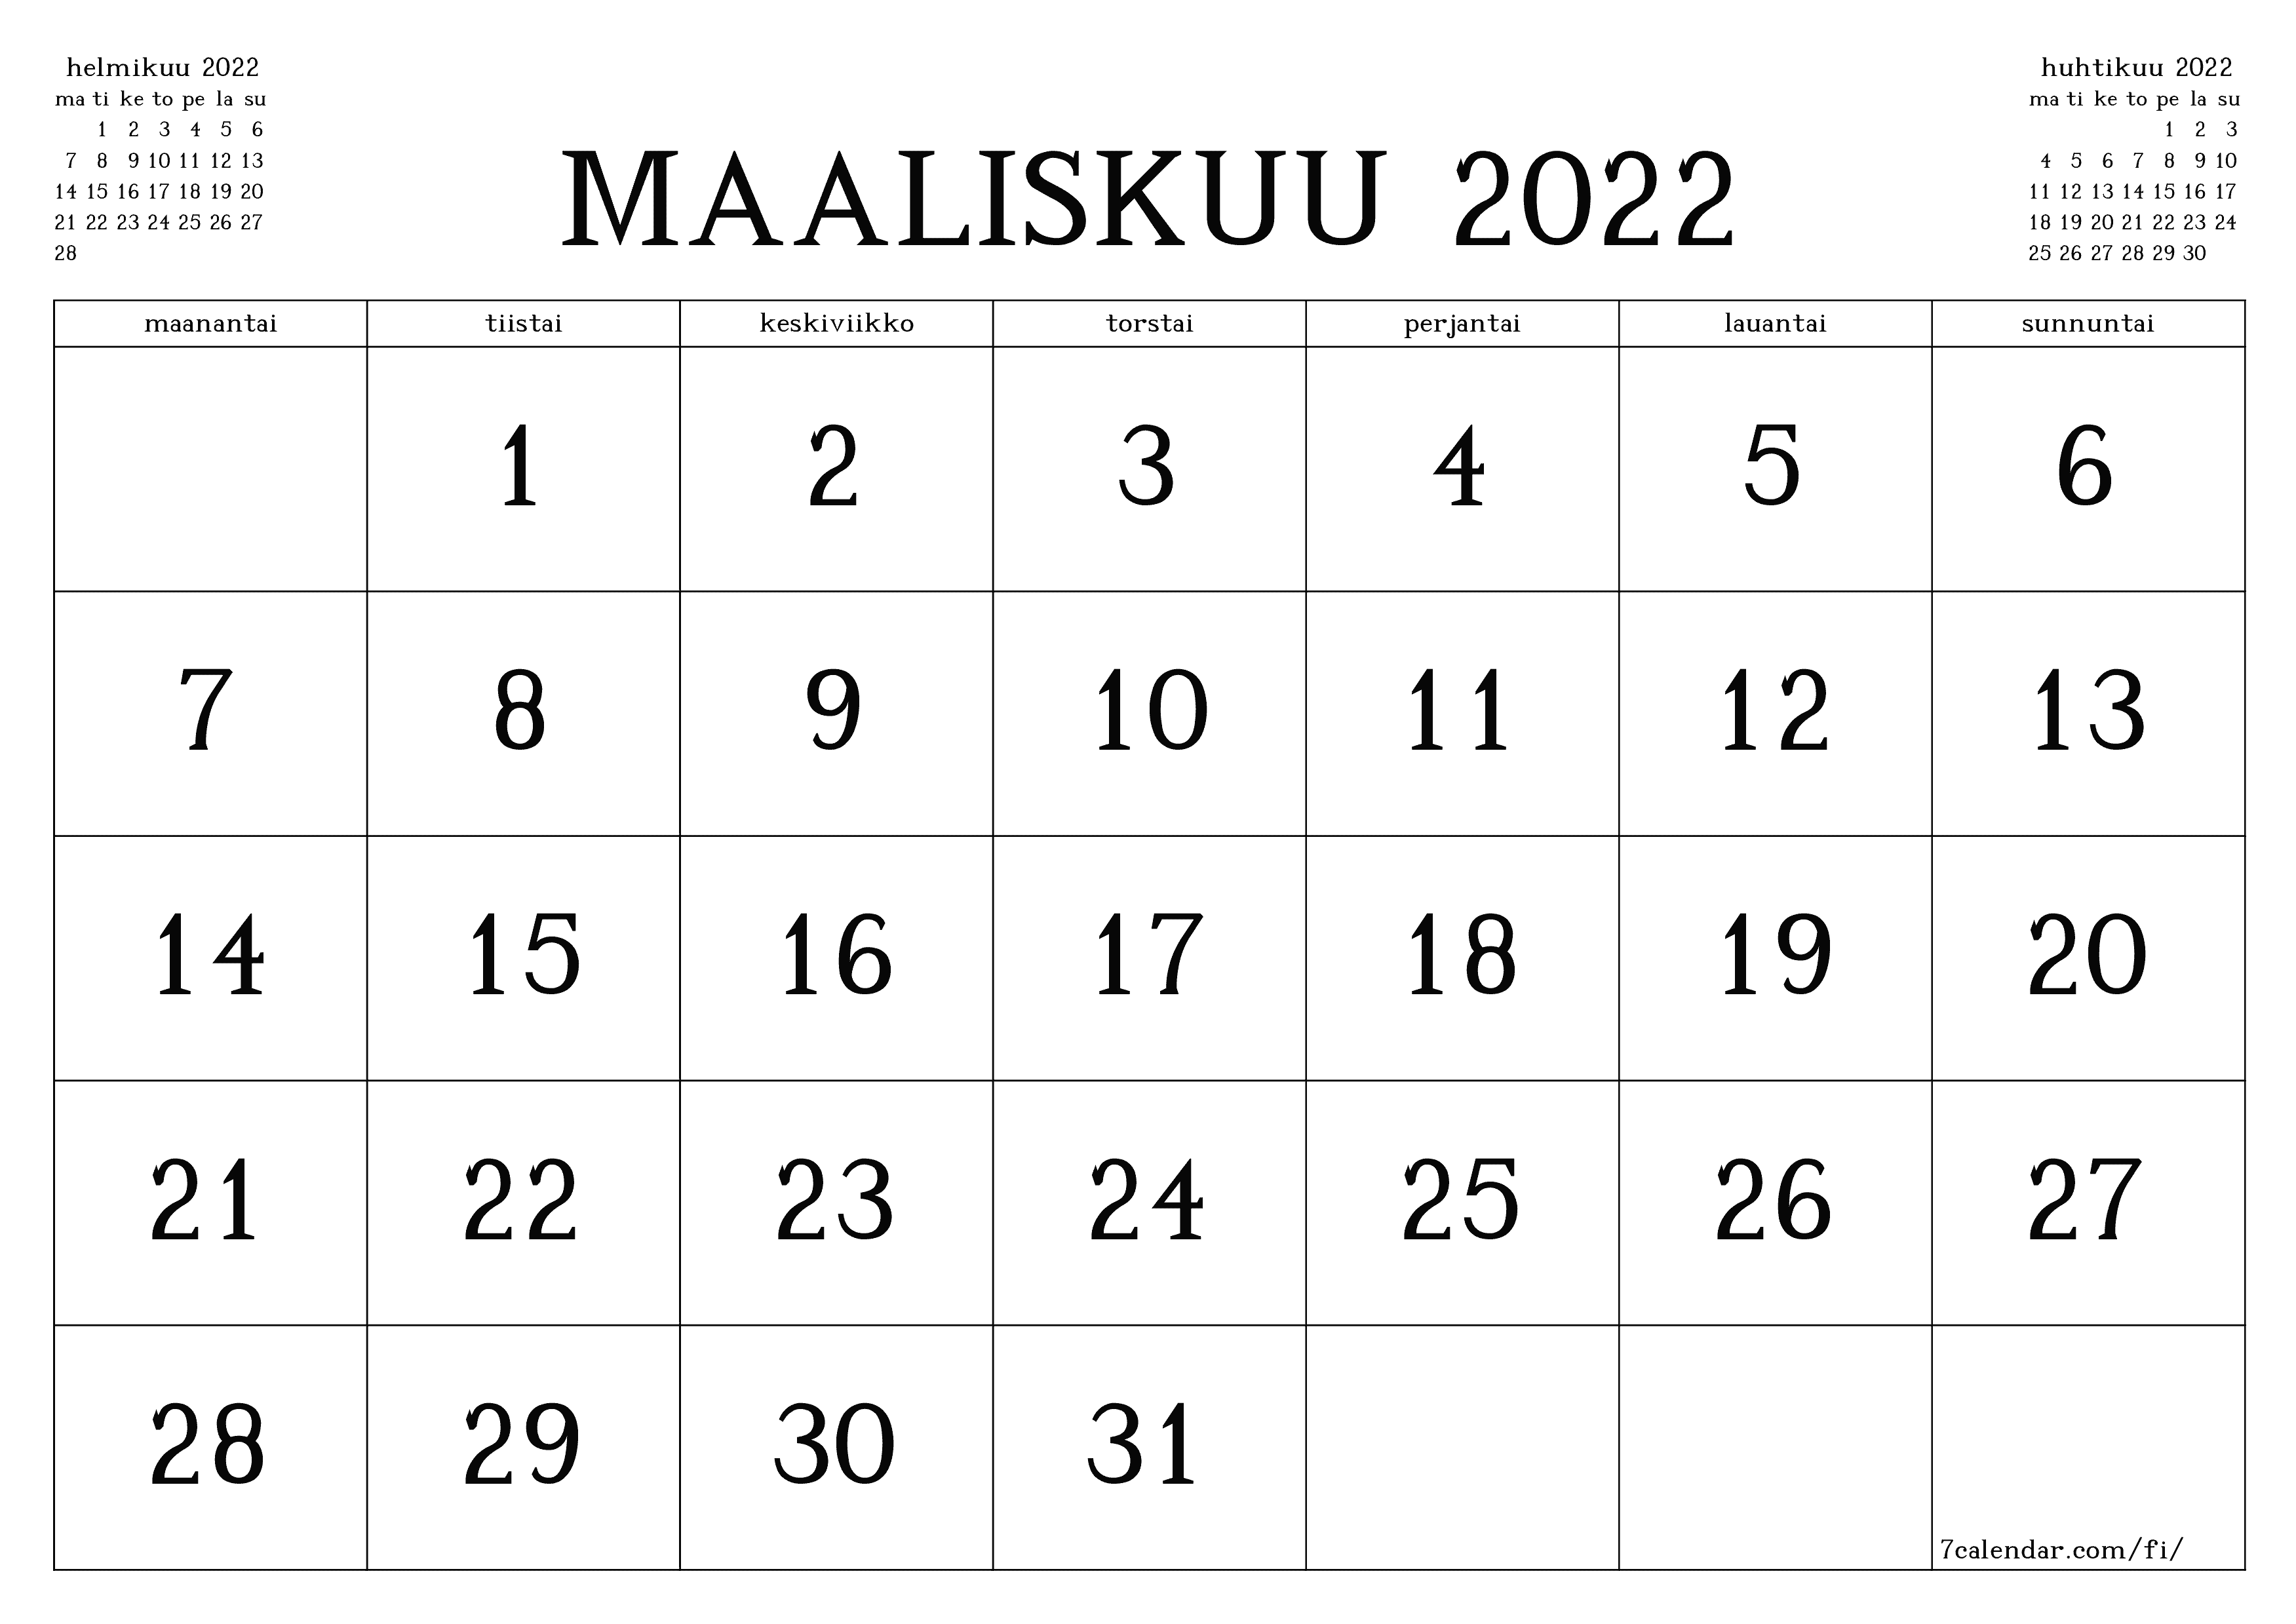 Tyhjennä kuukausittainen suunnittelija kuukaudelle maaliskuu 2022 muistiinpanoilla, tallenna ja tulosta PDF-muotoon PNG Finnish - 7calendar.com